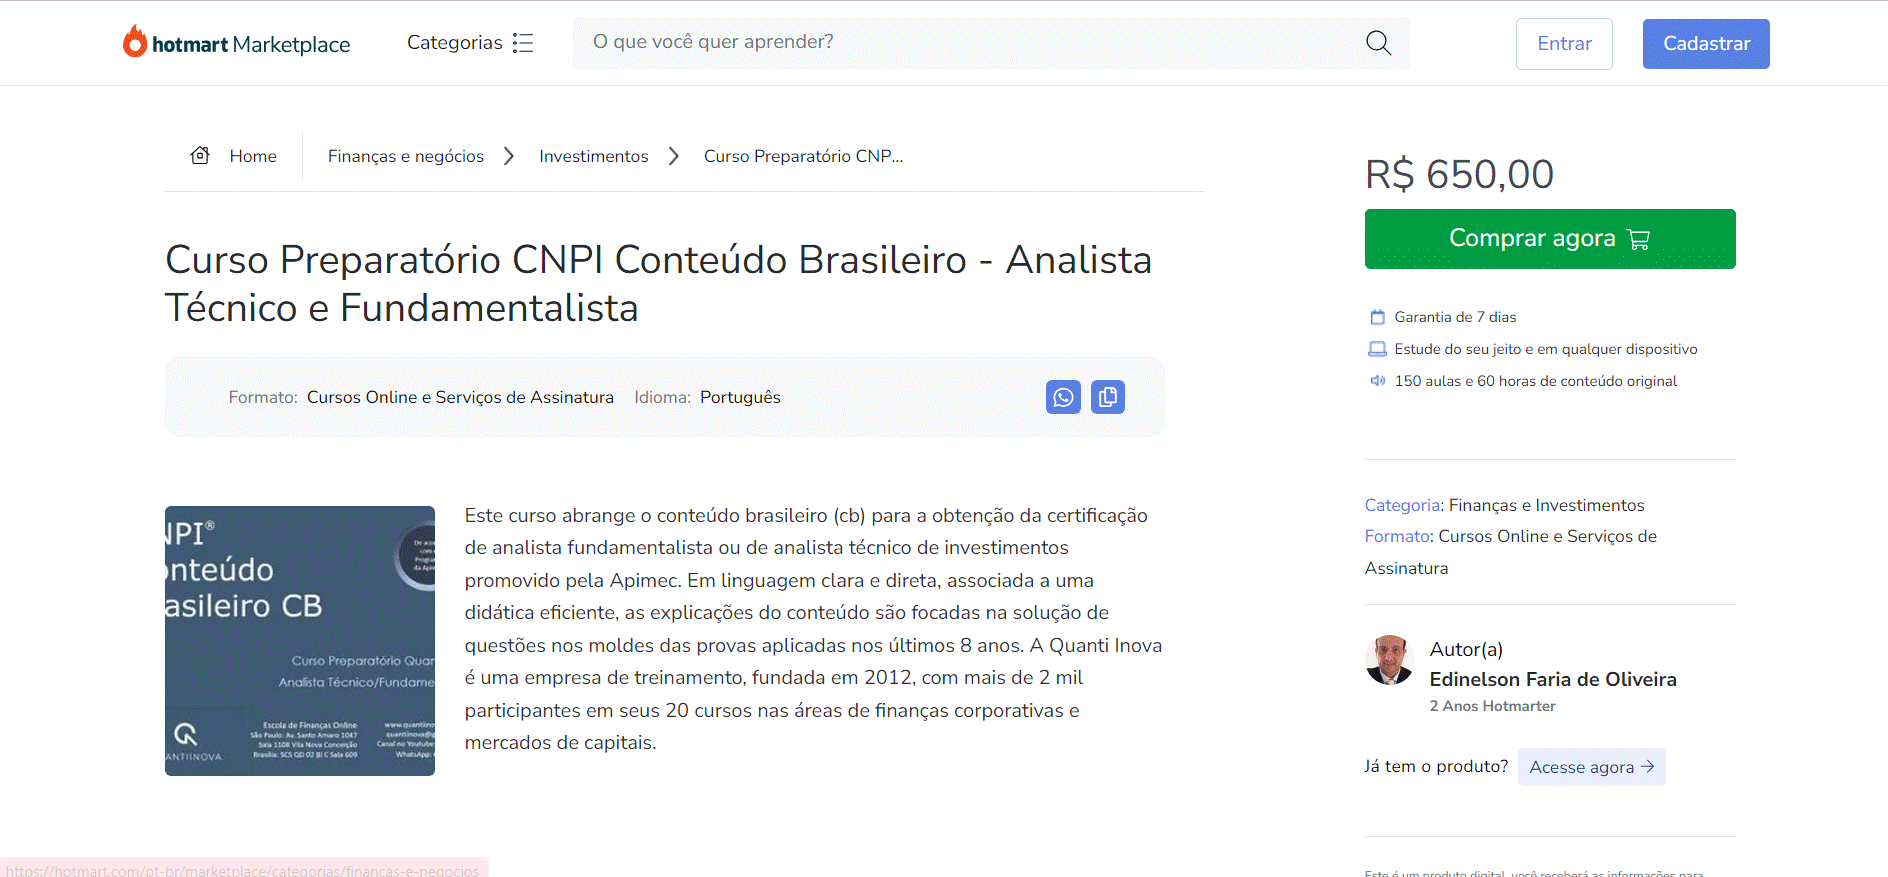 Curso Preparatório CNPI Conteúdo Brasileiro - Analista Técnico e Fundamentalista